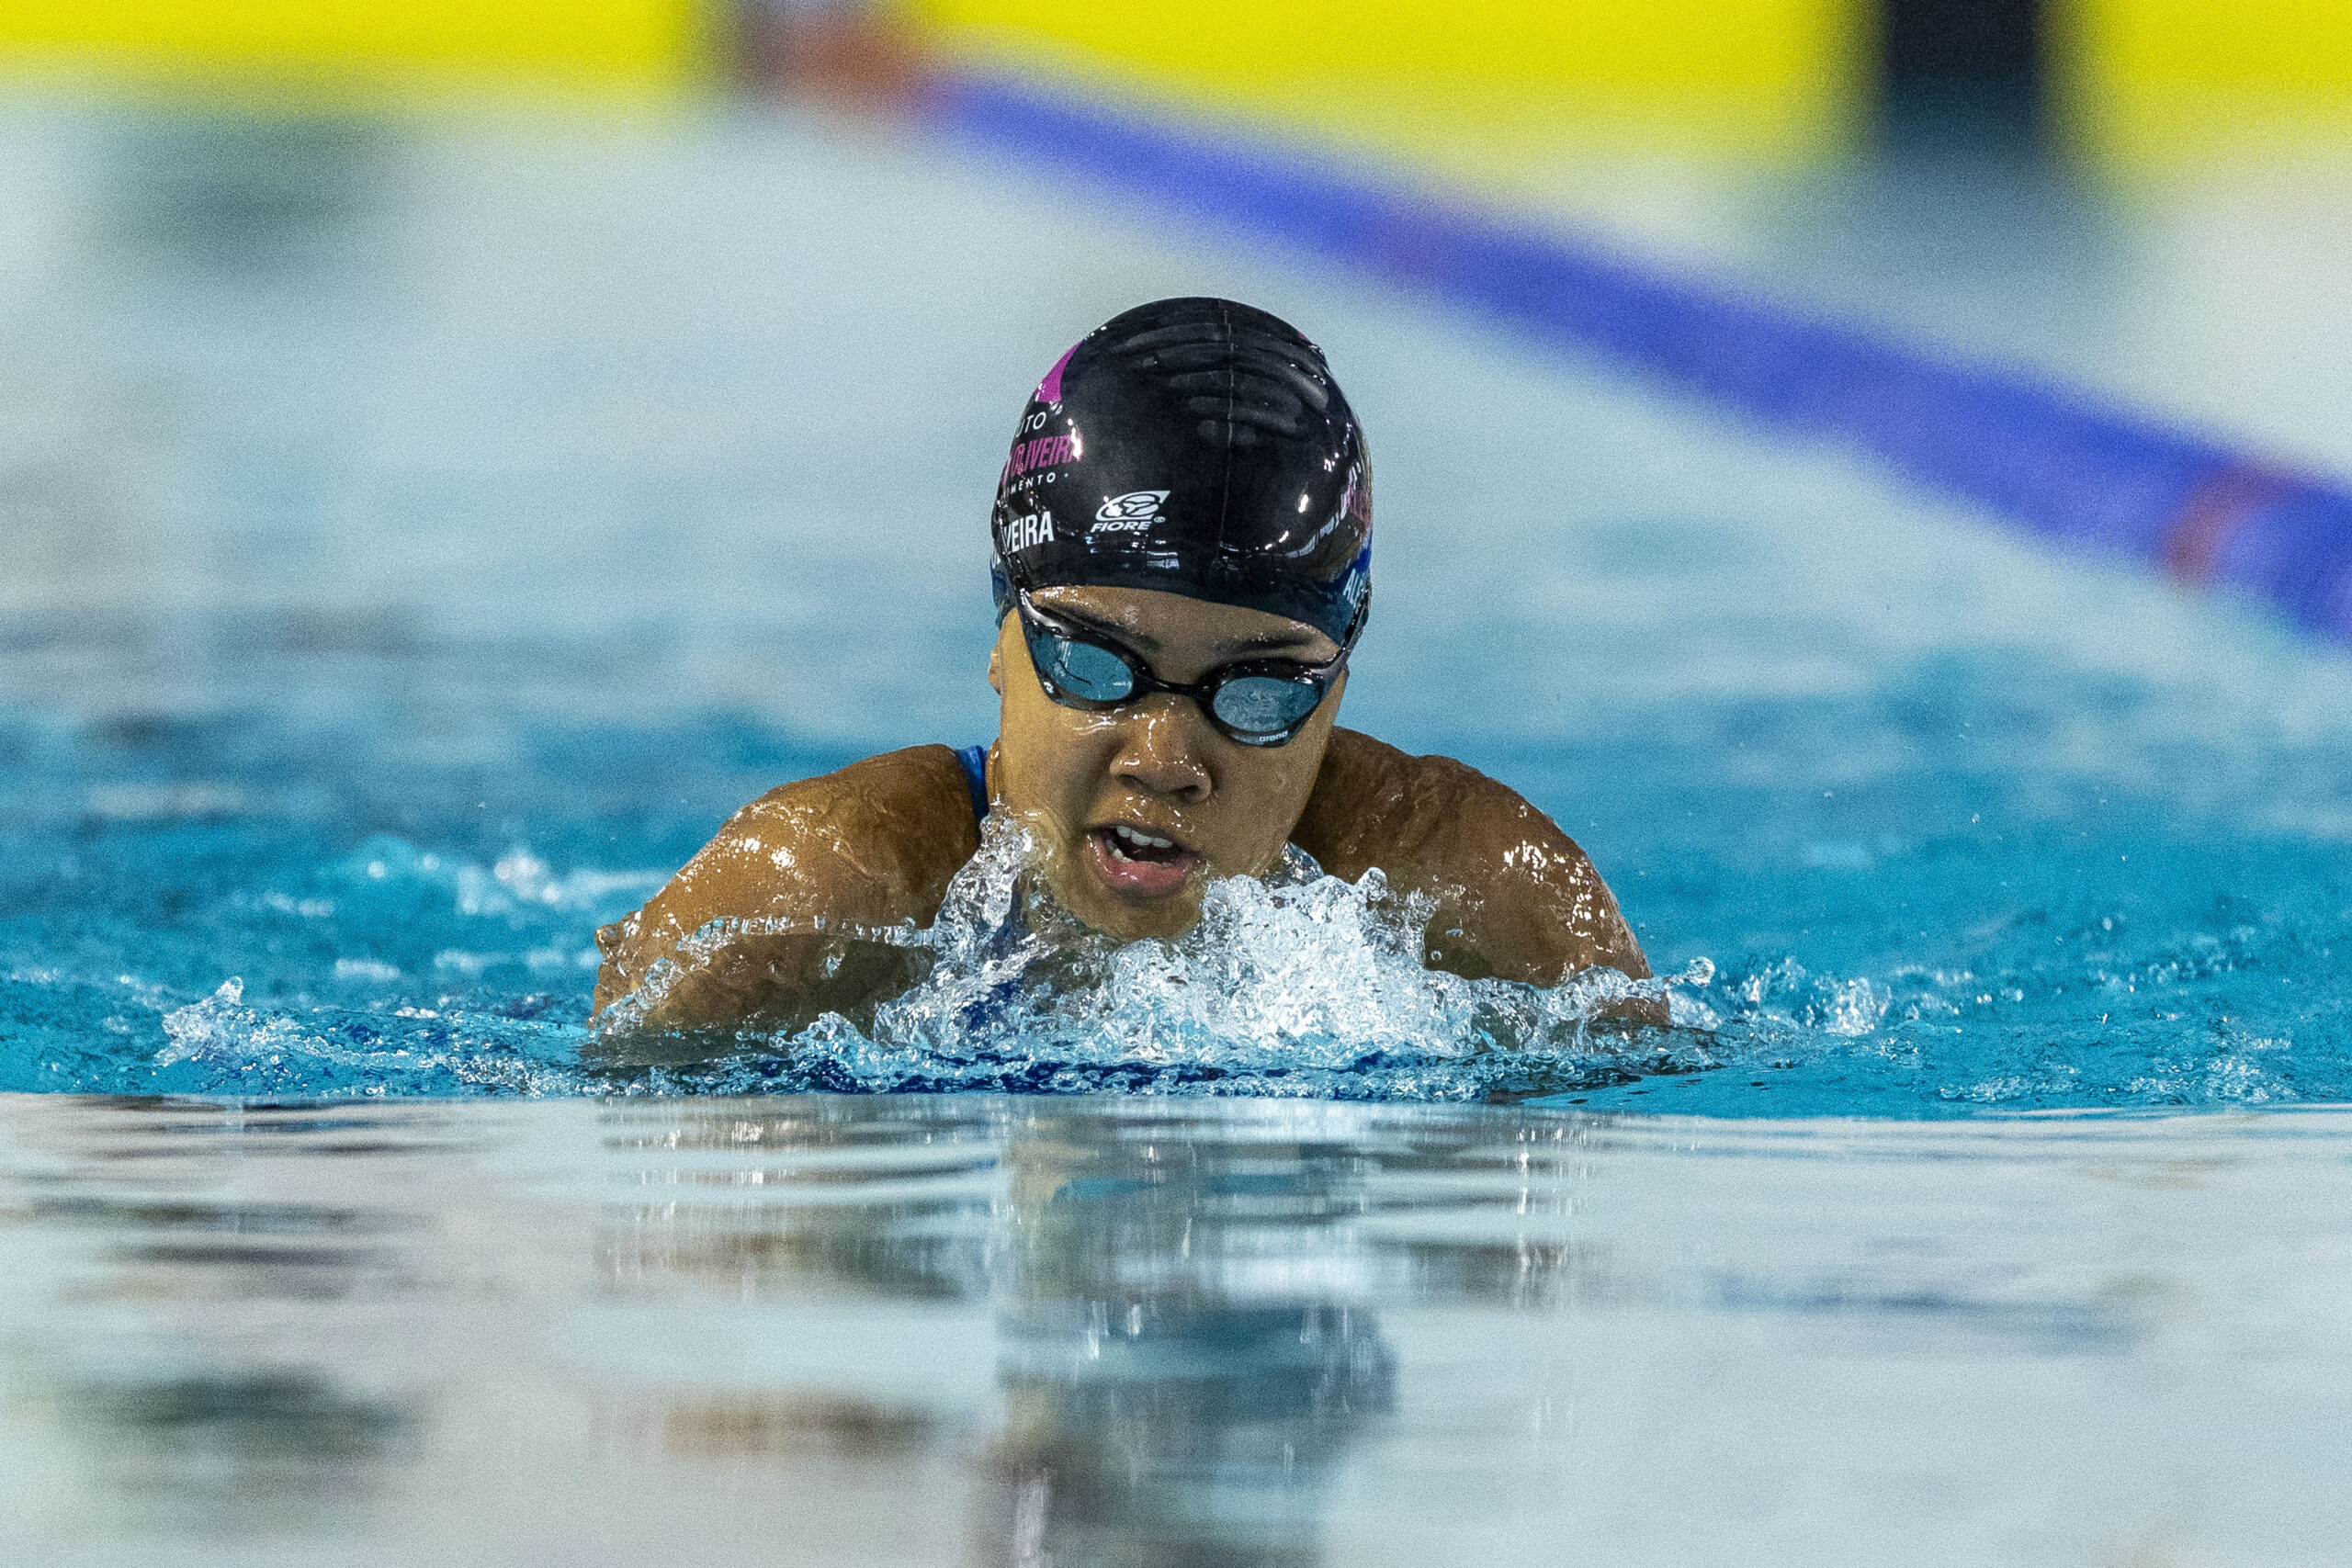 La nadadora de Escolinha, de 15 años, alcanza el índice Parapan, rompiendo el récord desde 2008